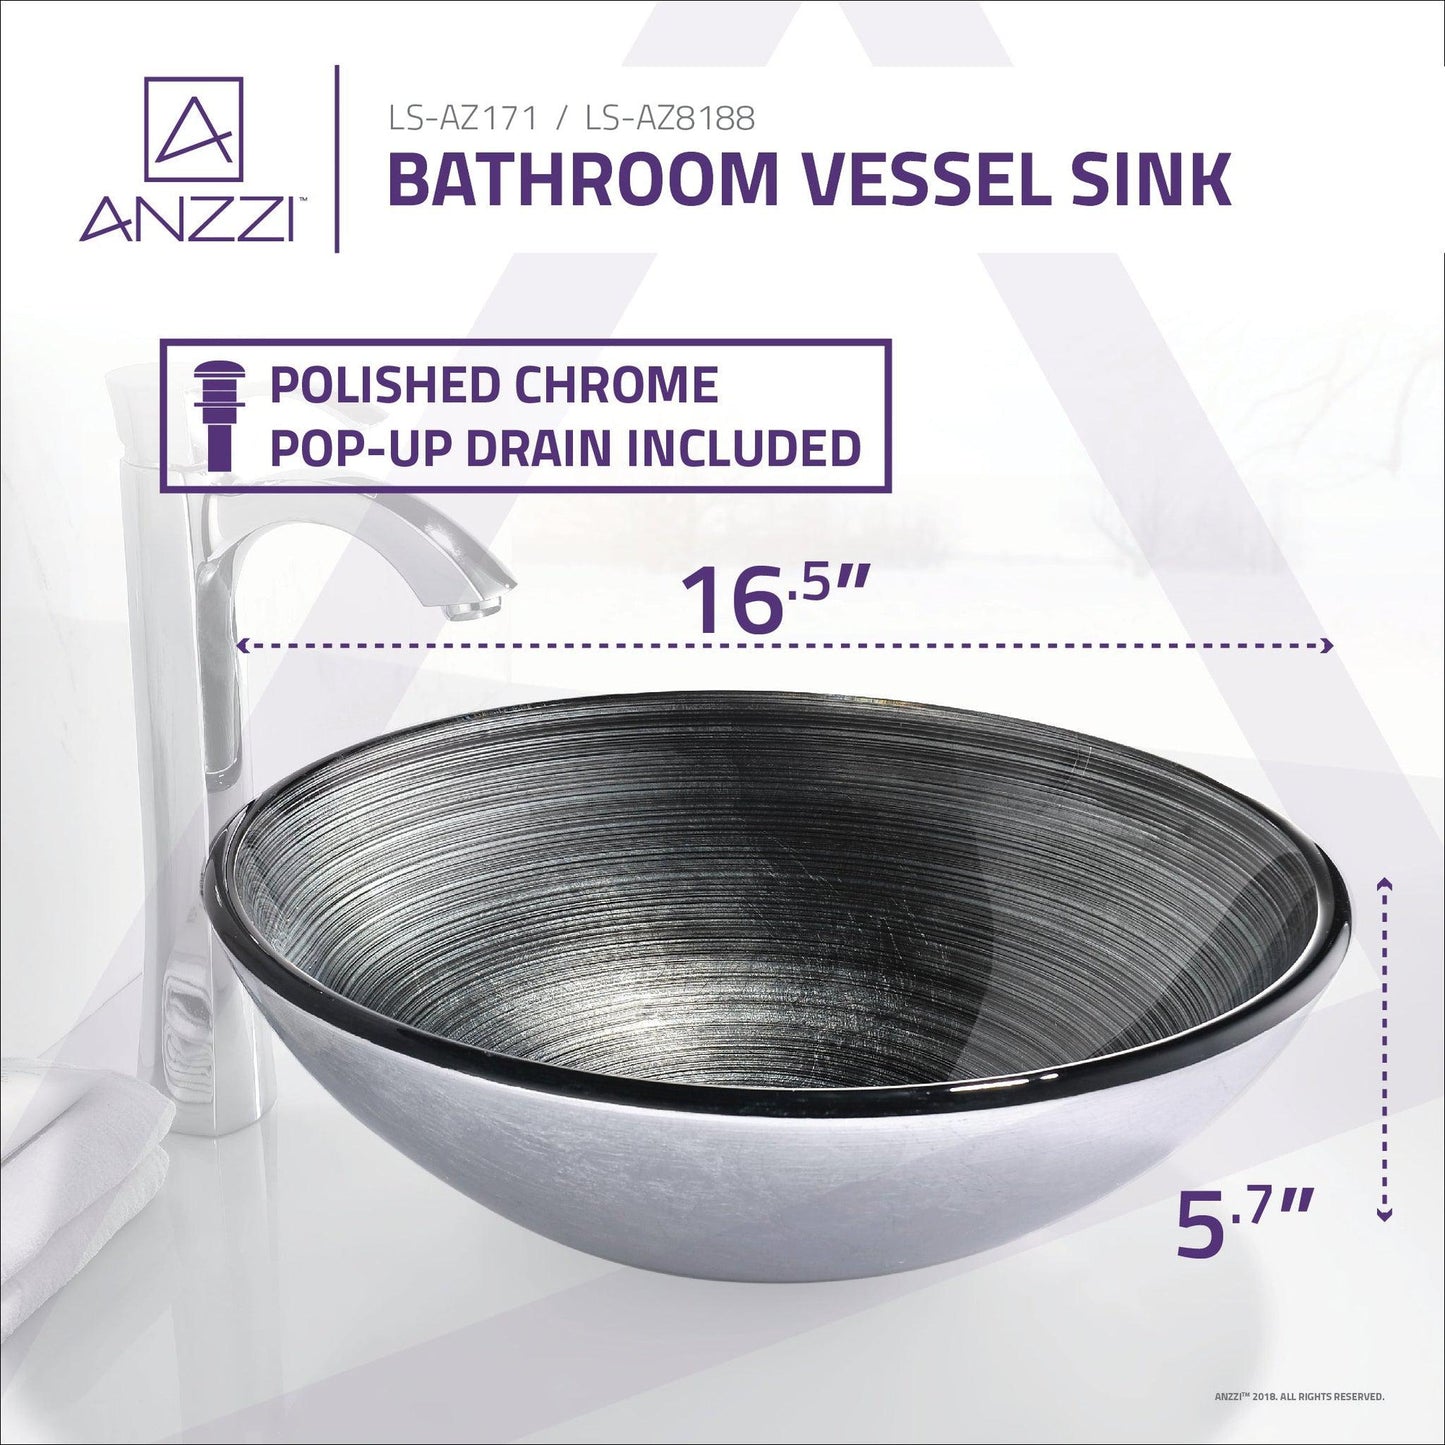 ANZZI Tara Series 17" x 17" Round Precious Storm Deco-Glass Vessel Sink With Polished Chrome Pop-Up Drain